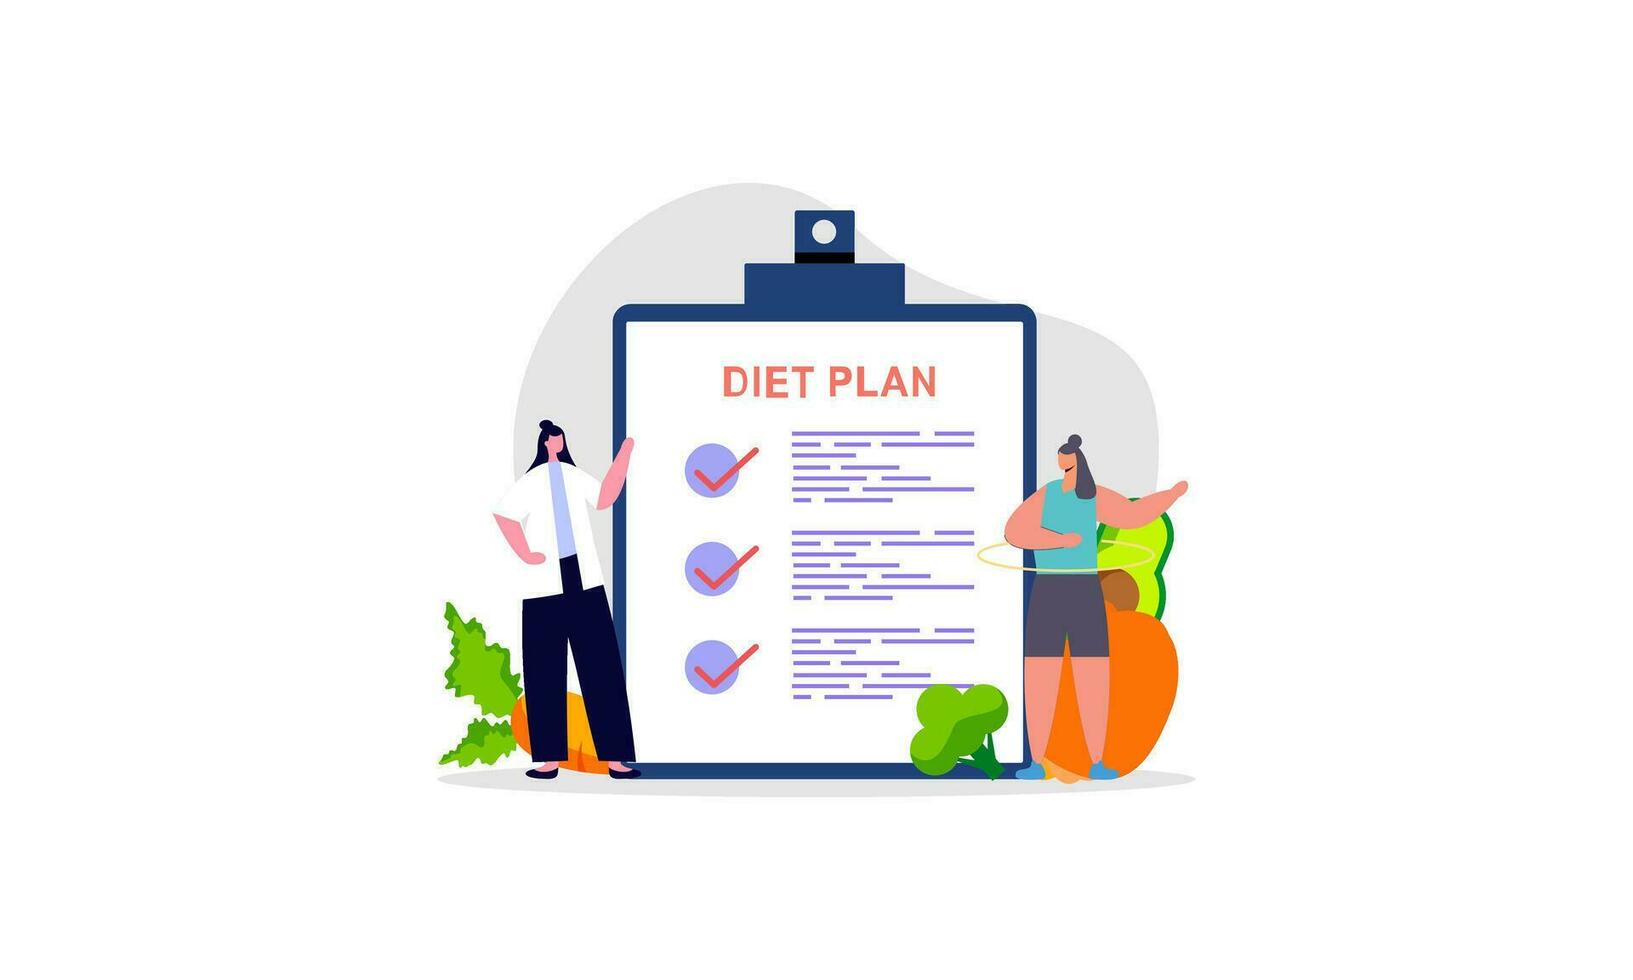 dieta plan Lista de Verificación ilustración. personas haciendo ejercicio, formación y planificación dieta con Fruta y vegetal. vector